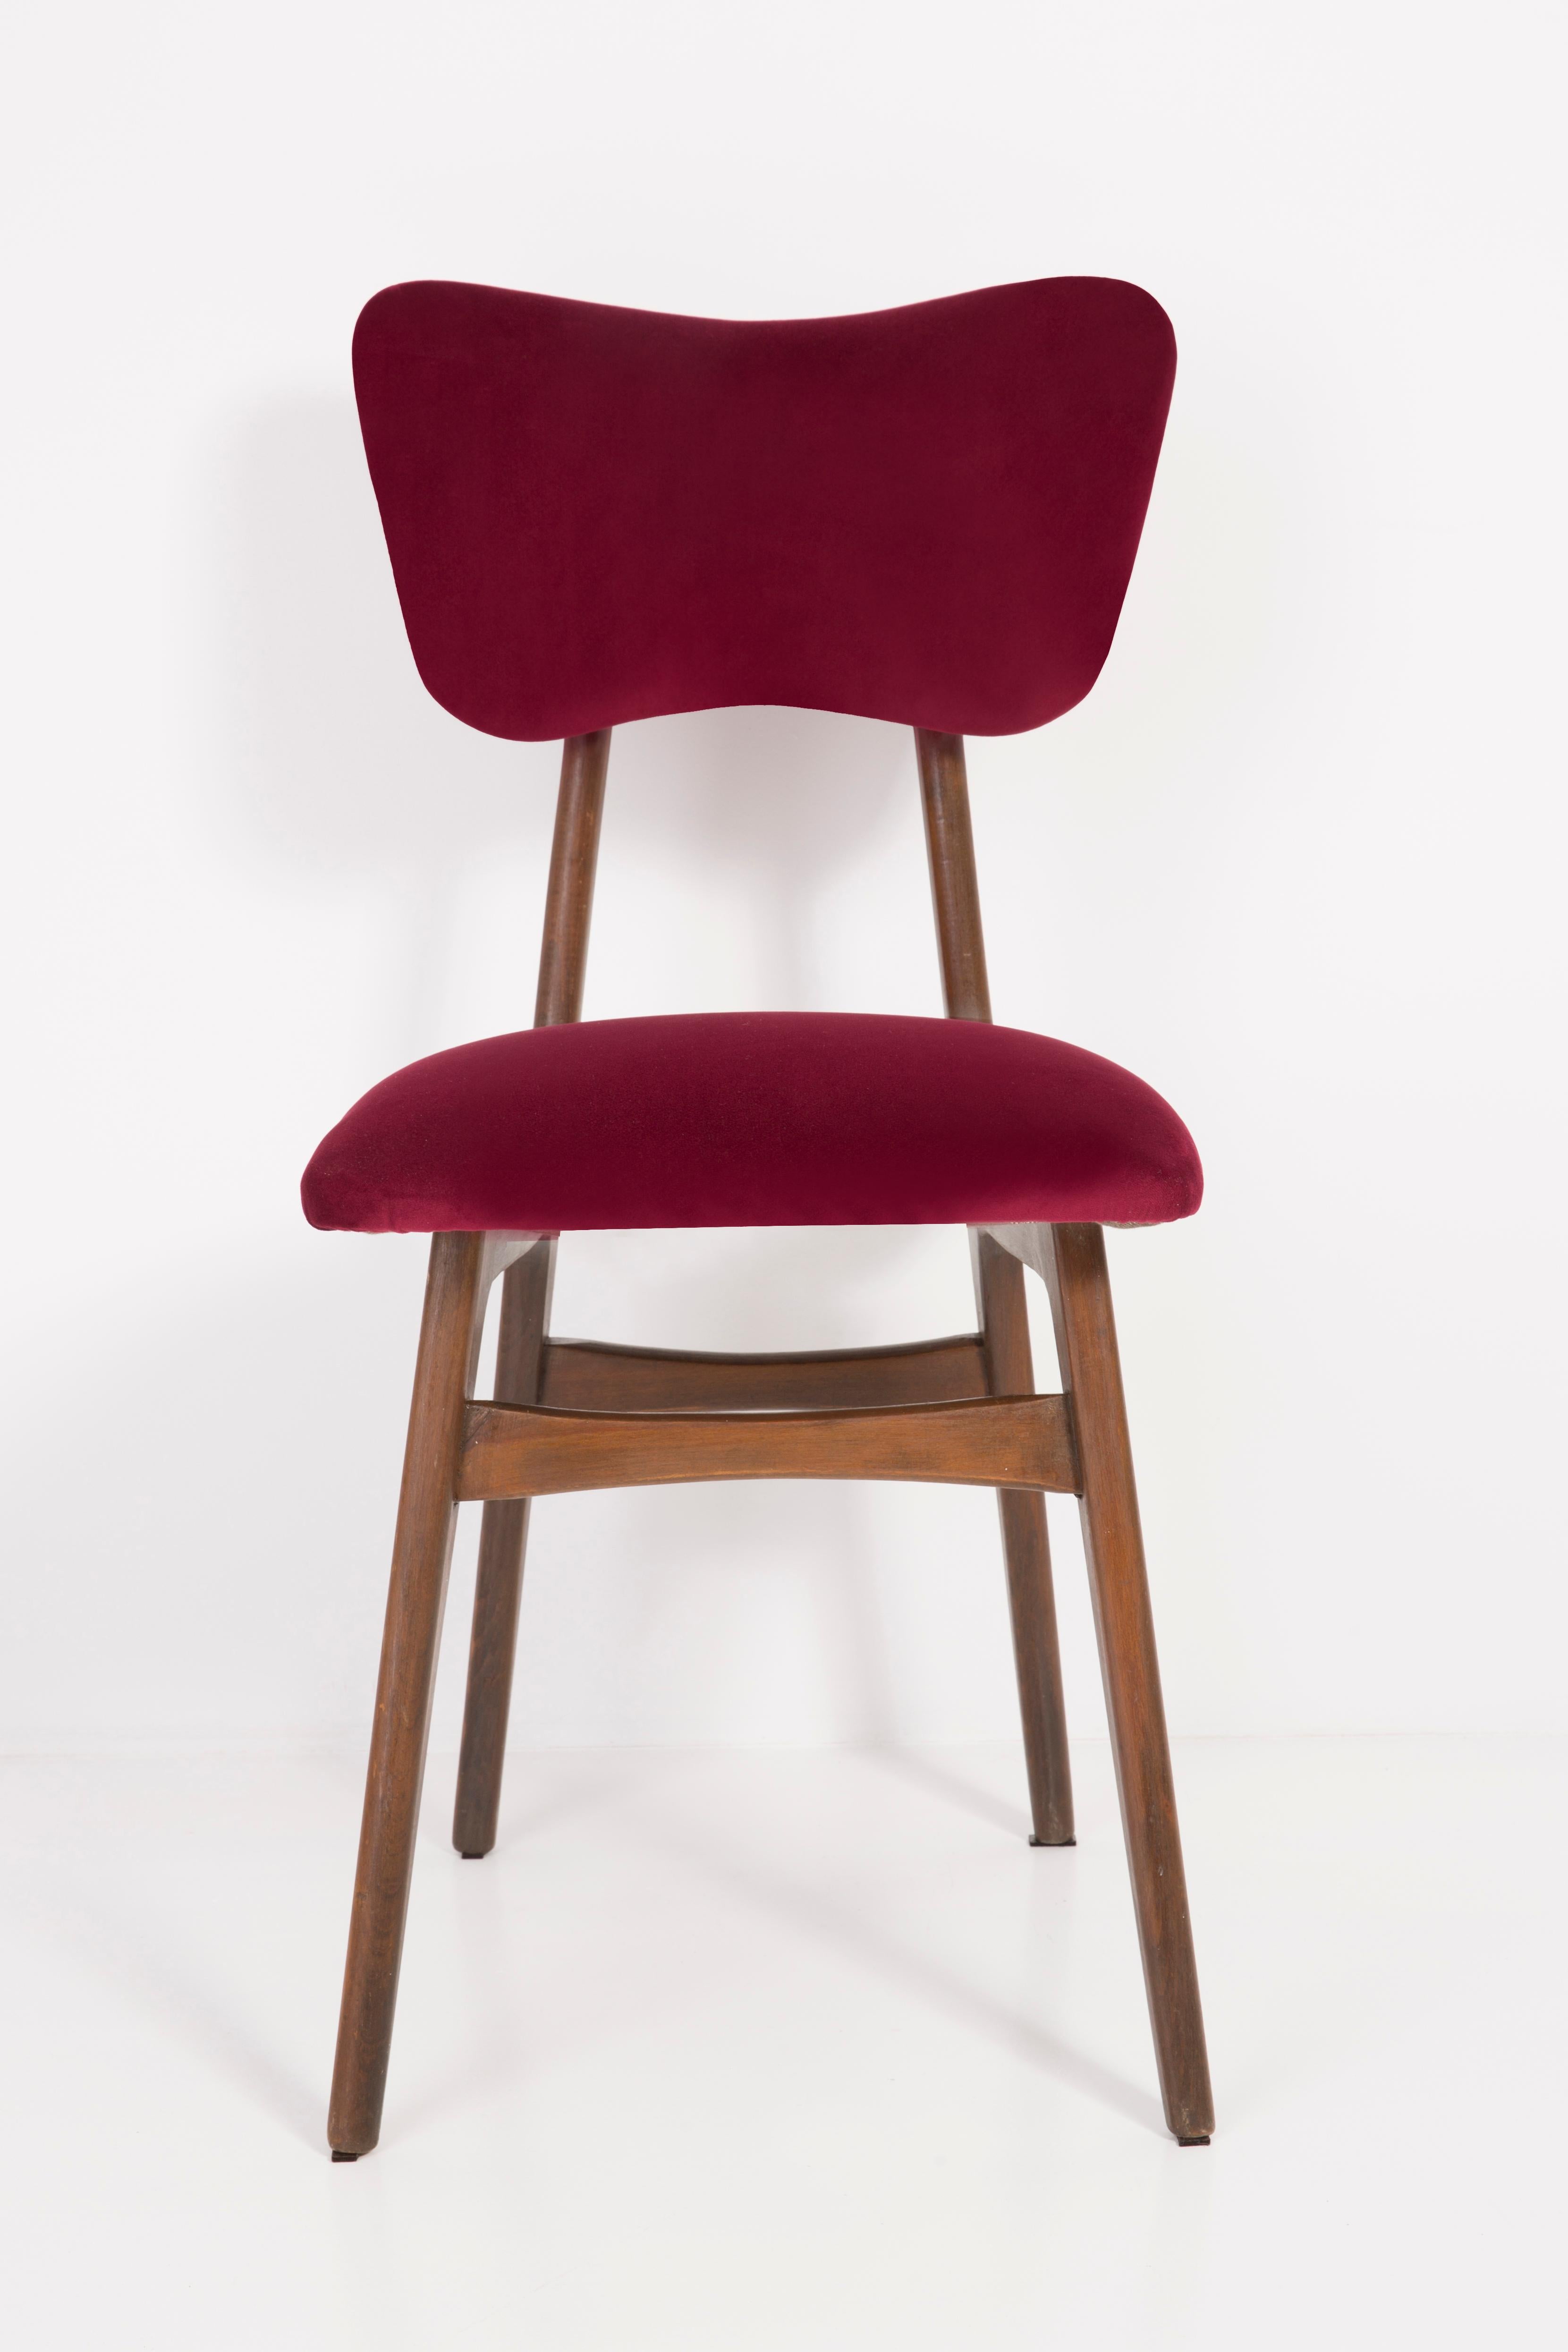 Stuhl entworfen von Prof. Rajmund Halas. Hergestellt aus Buchenholz. Der Stuhl wurde komplett neu gepolstert, die Holzarbeiten wurden aufgefrischt. Sitz und Rückenlehne sind mit burgunderrotem, strapazierfähigem und angenehm zu berührendem Samtstoff